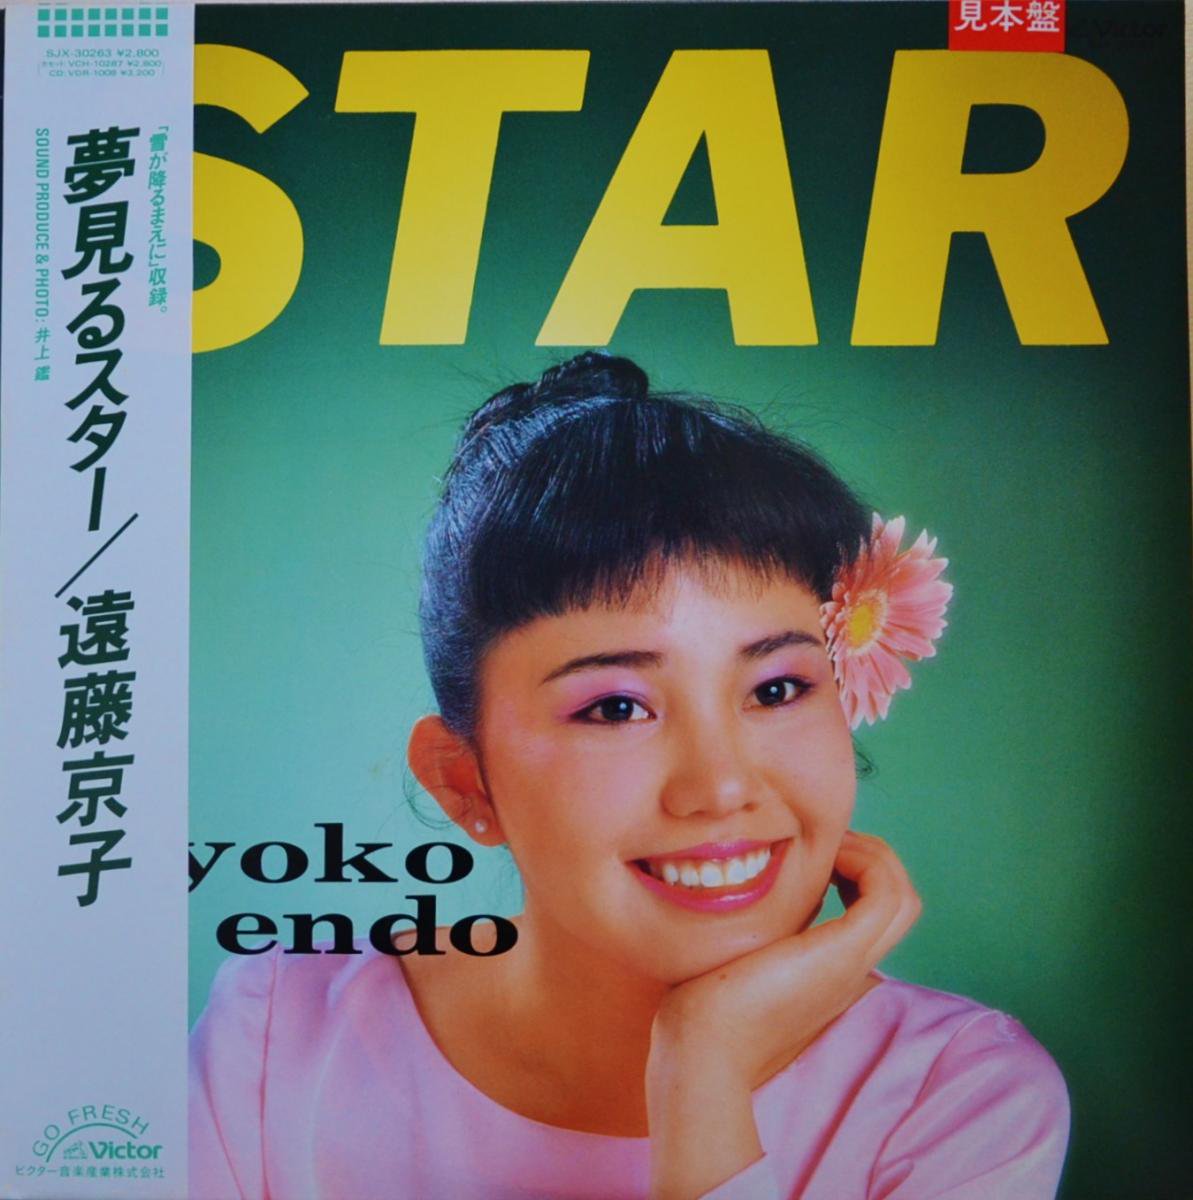 遠藤京子 KYOKO ENDO / 夢見るスター STAR (LP)